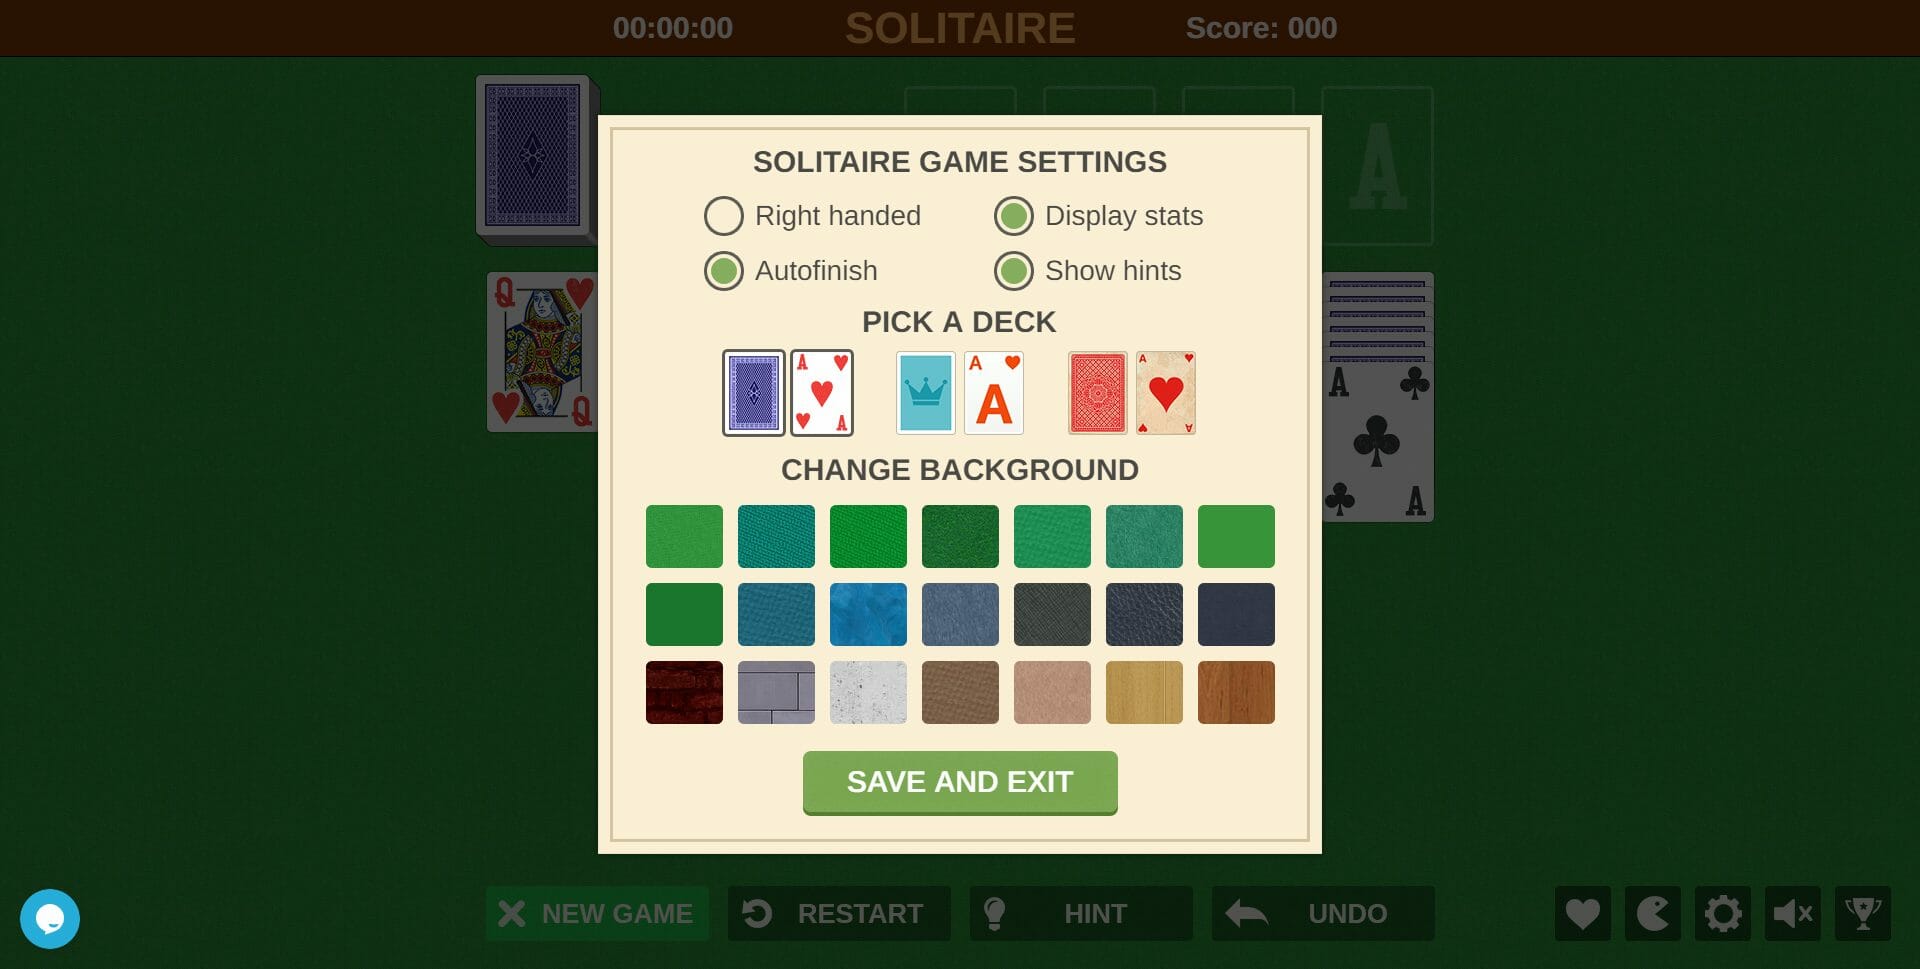 Juega Solitario: tu juego de cartas favorito ahora en línea gratis